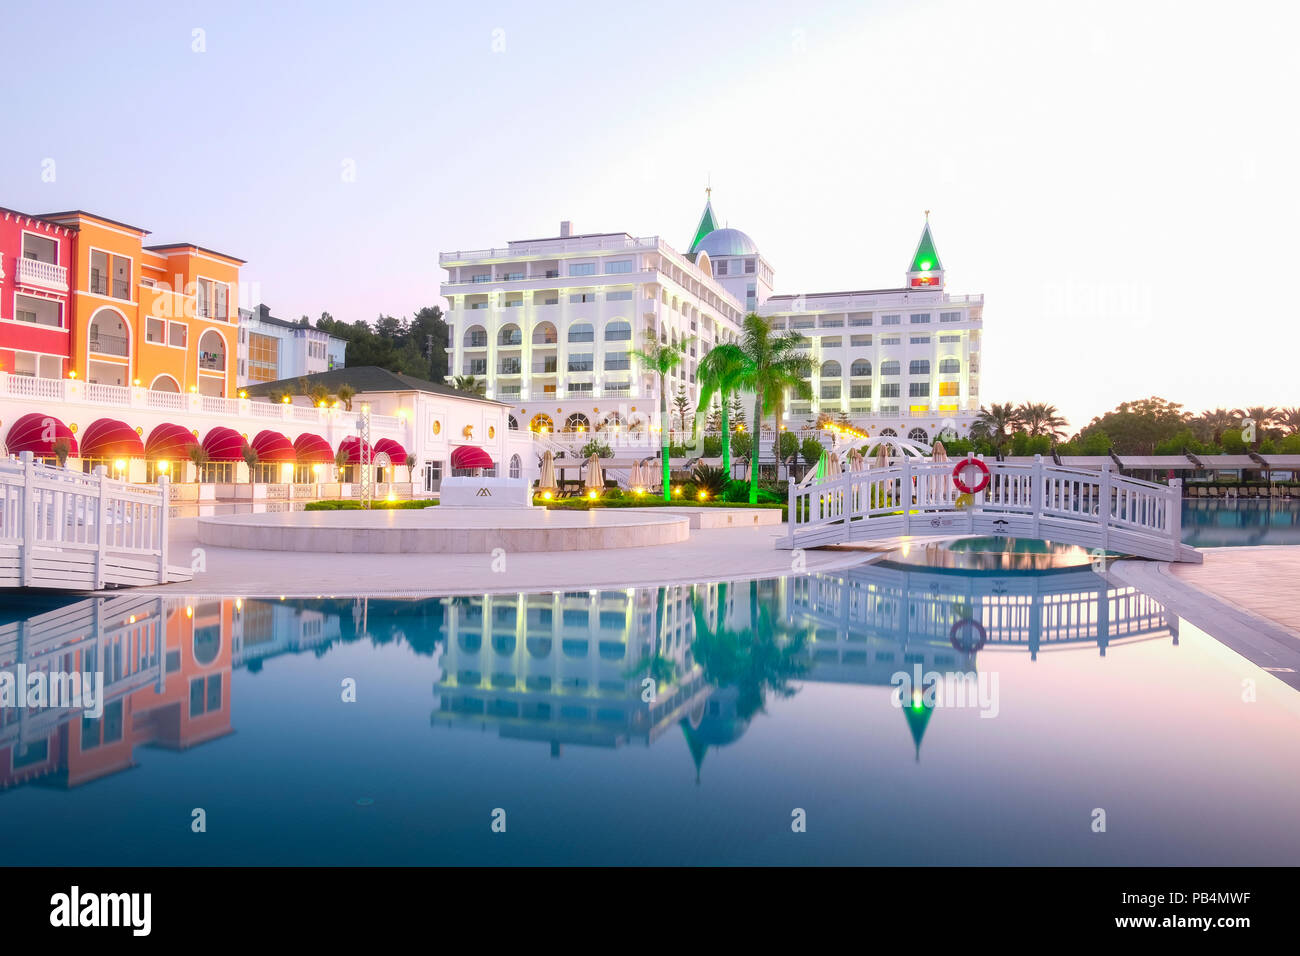 El popular complejo turístico Amara Dolce Vita Hotel de lujo Foto de stock